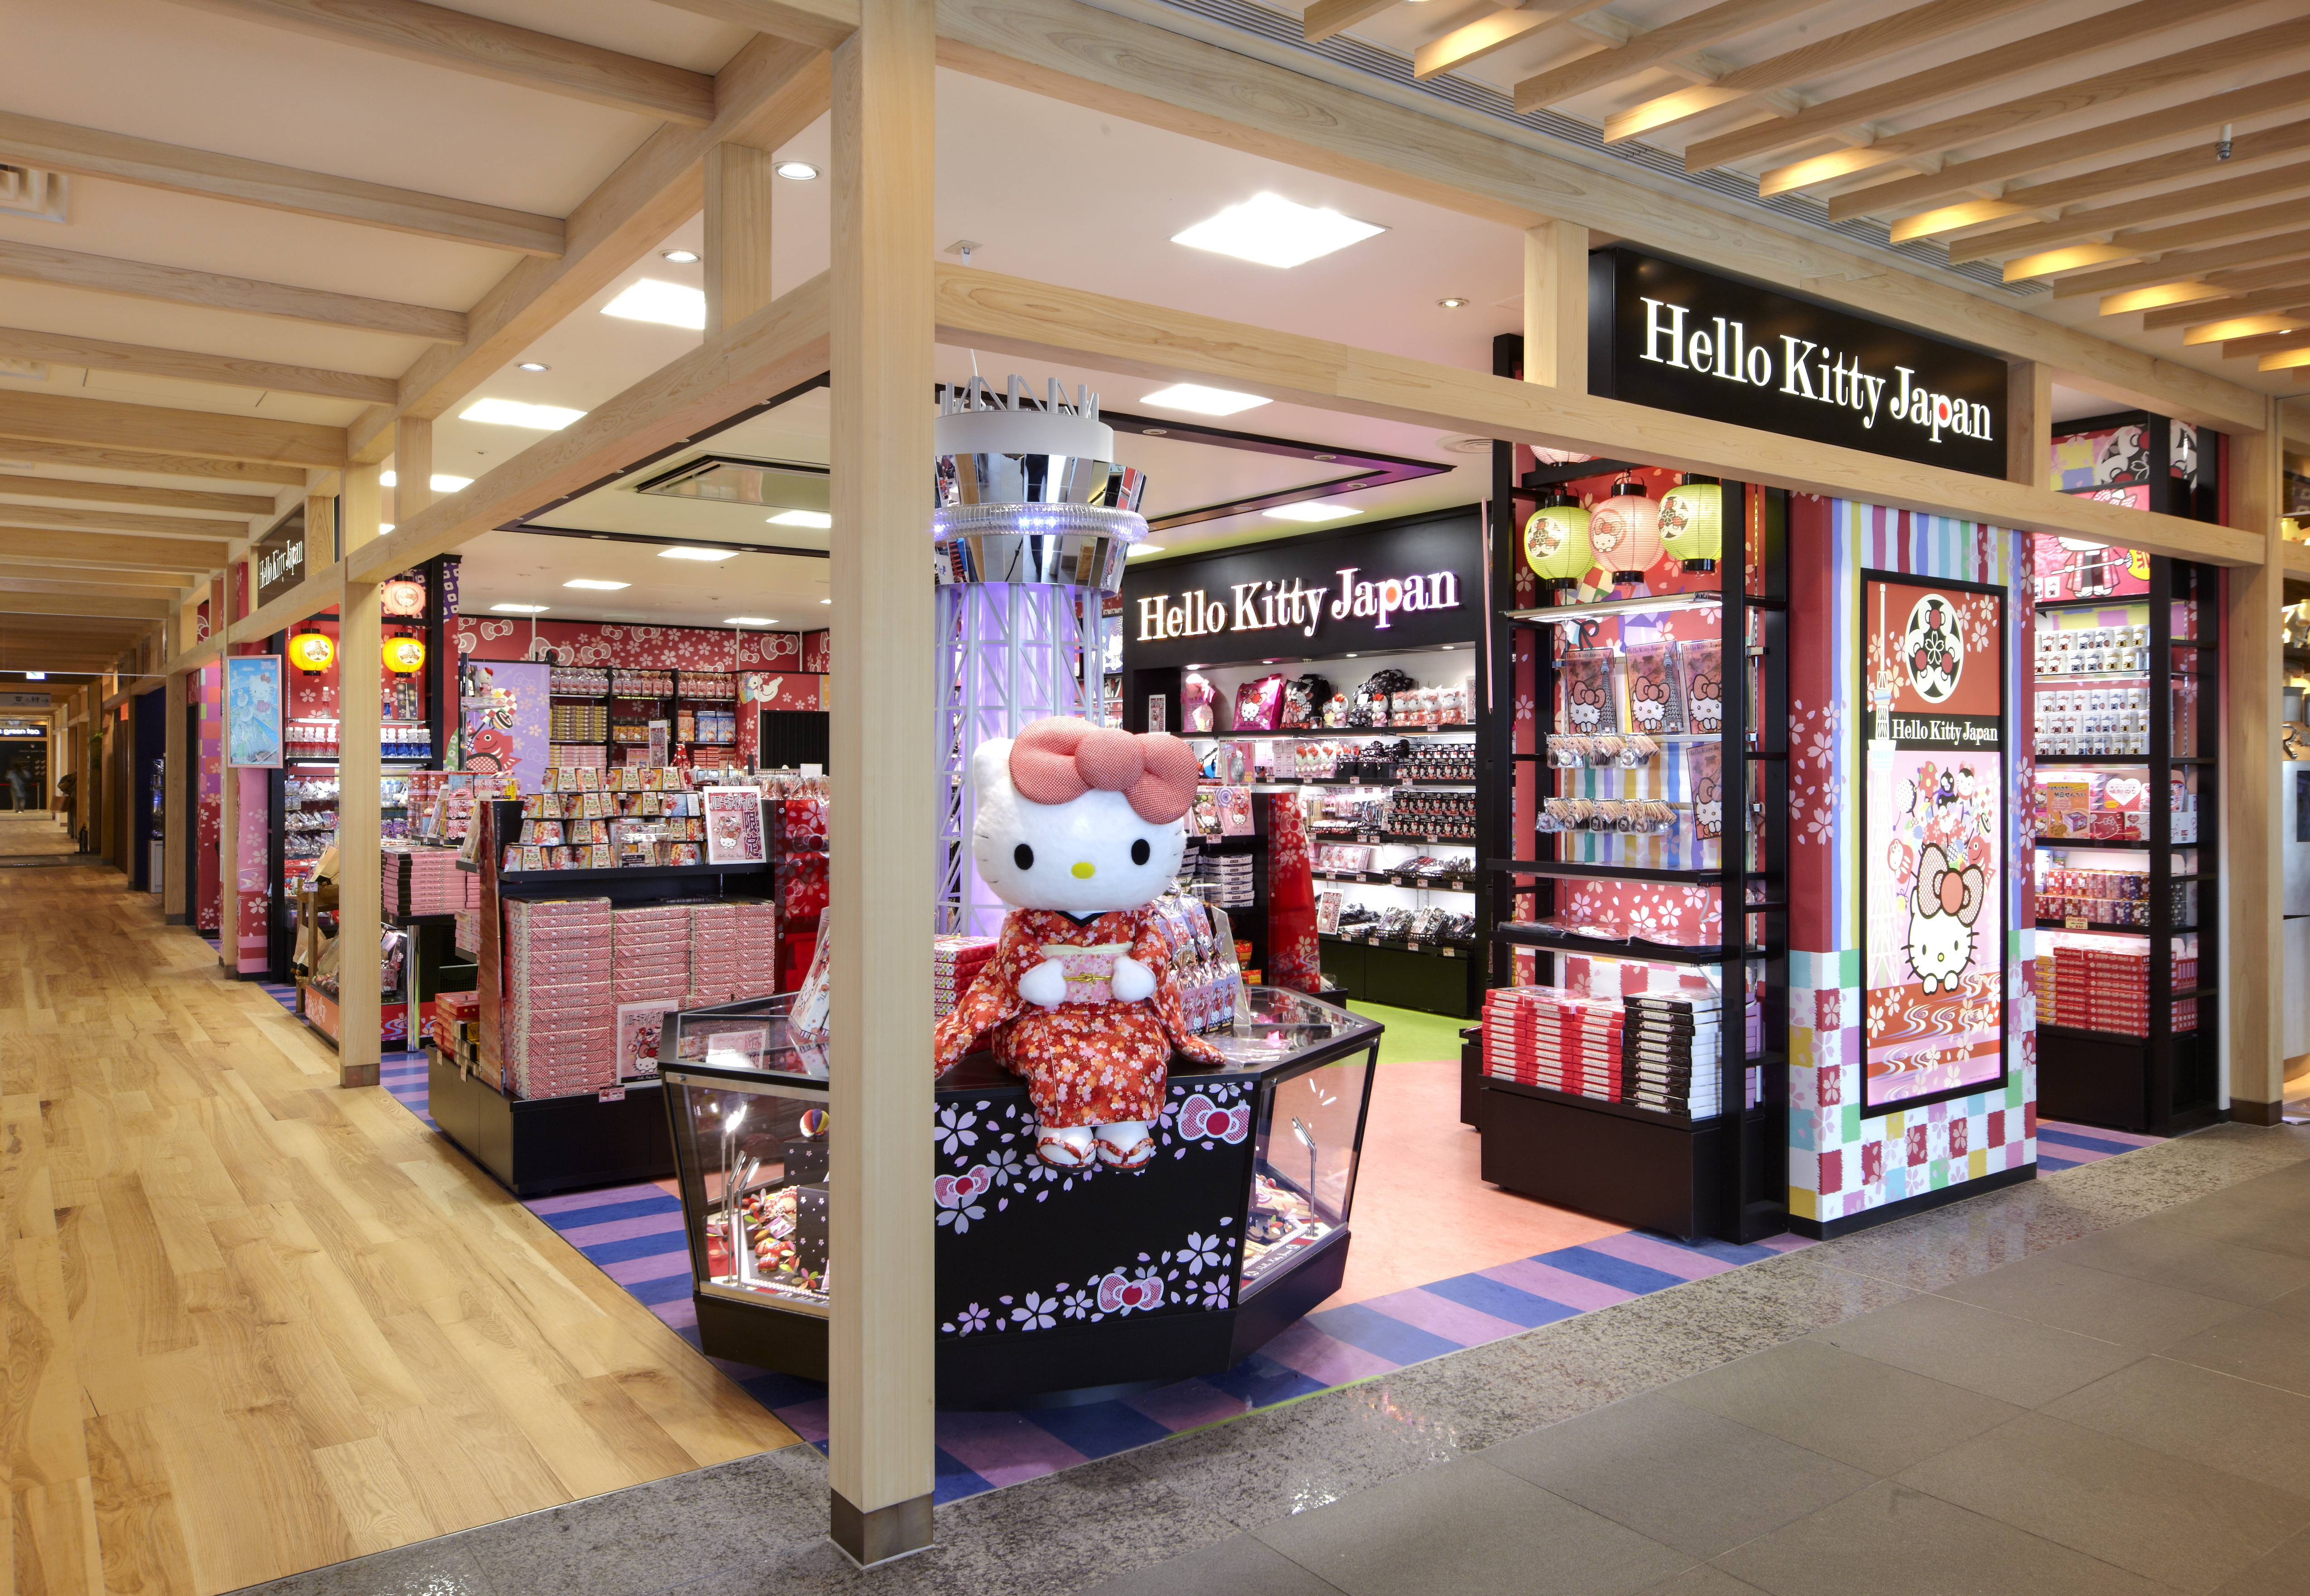 Hello Kitty Japan 東京スカイツリータウン ソラマチ店 Japan Shopping Now